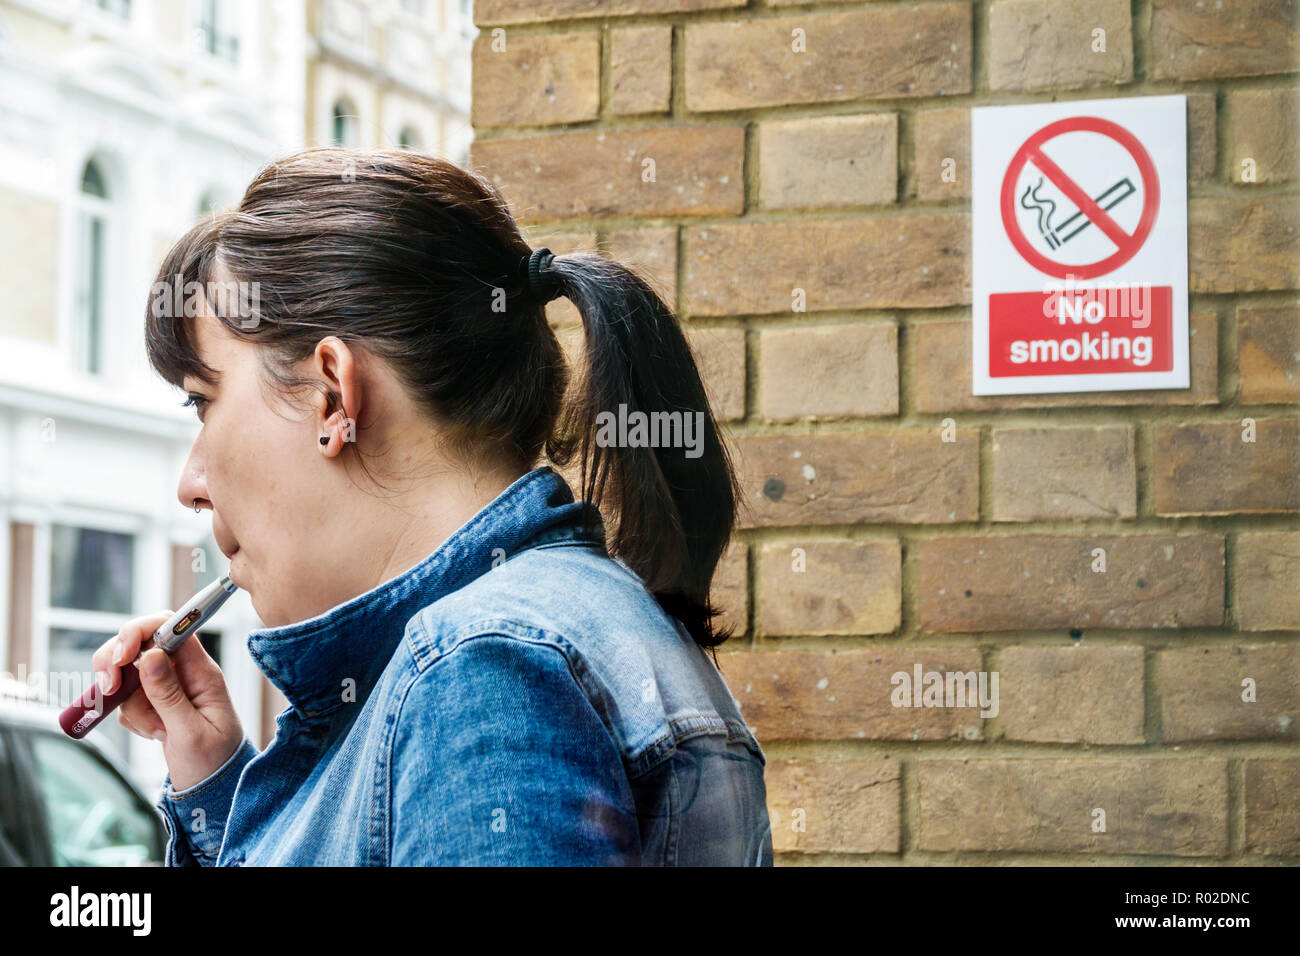 London England, Großbritannien, Mayfair, Regent Street, elektronische Zigarette, E-Zigarette, Rauchen, Verdampfen, Verbotsschild, Rauchen verboten, Ignorieren des Schildes, unhea Stockfoto